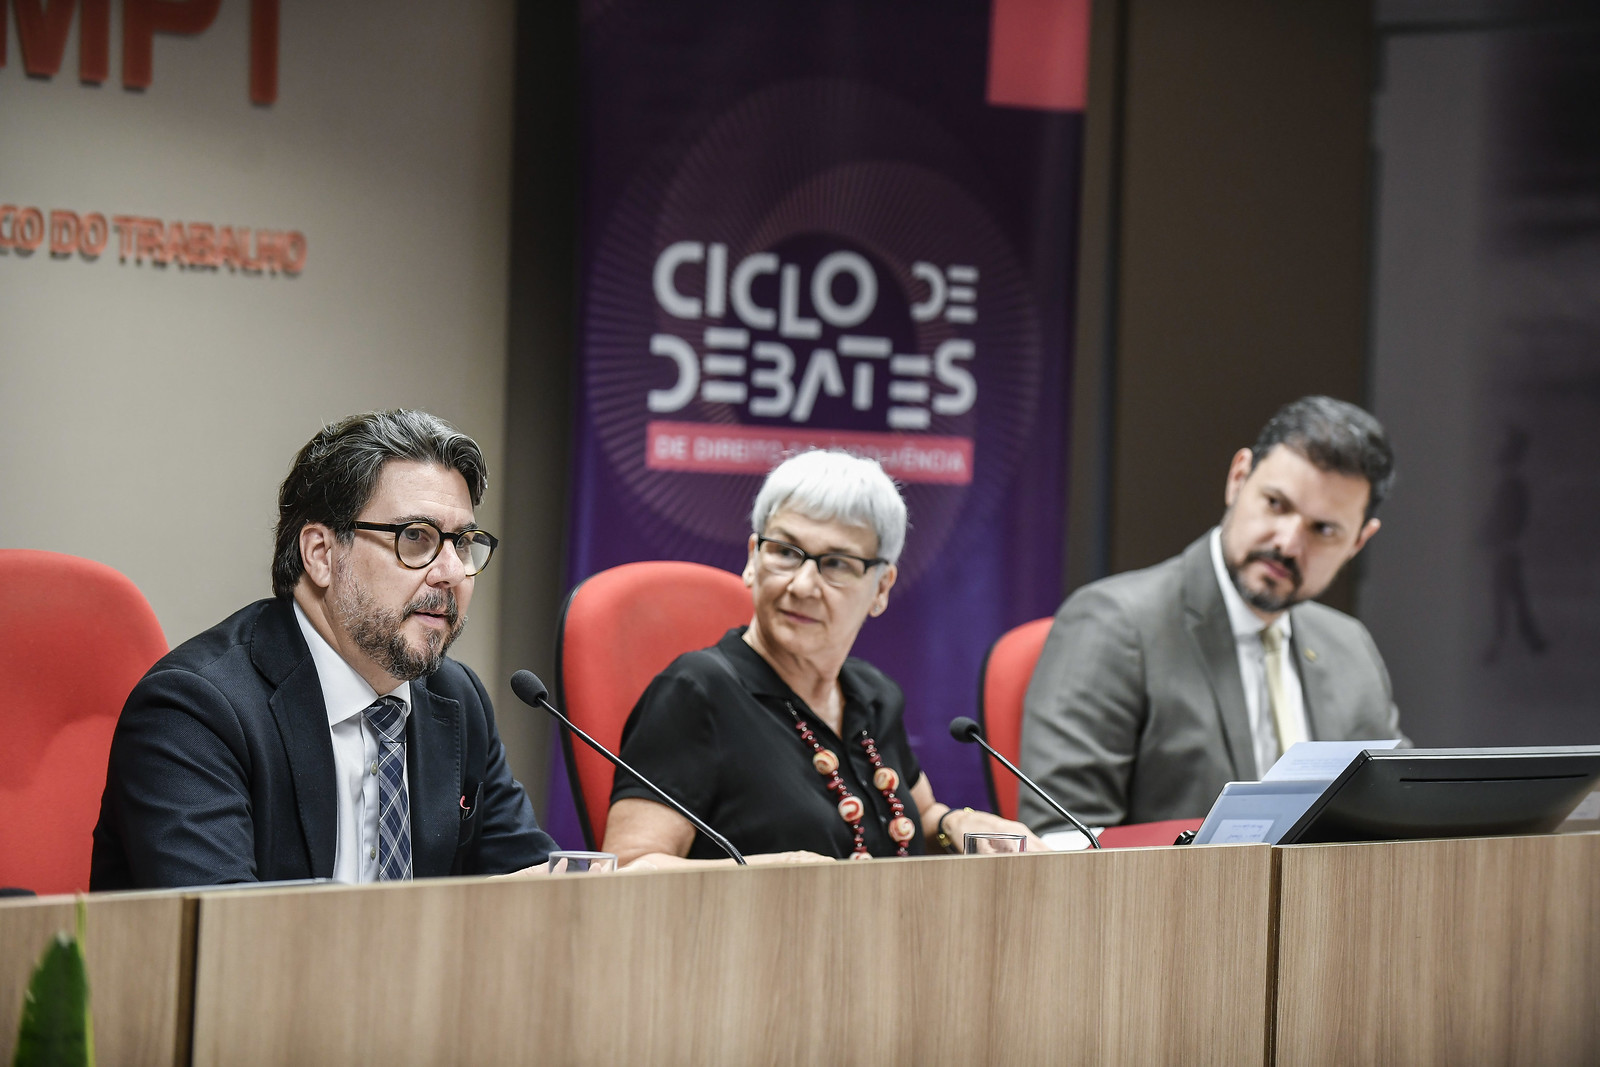 Ciclo de debates Insolvencia conselheiros e Maria Aparecida